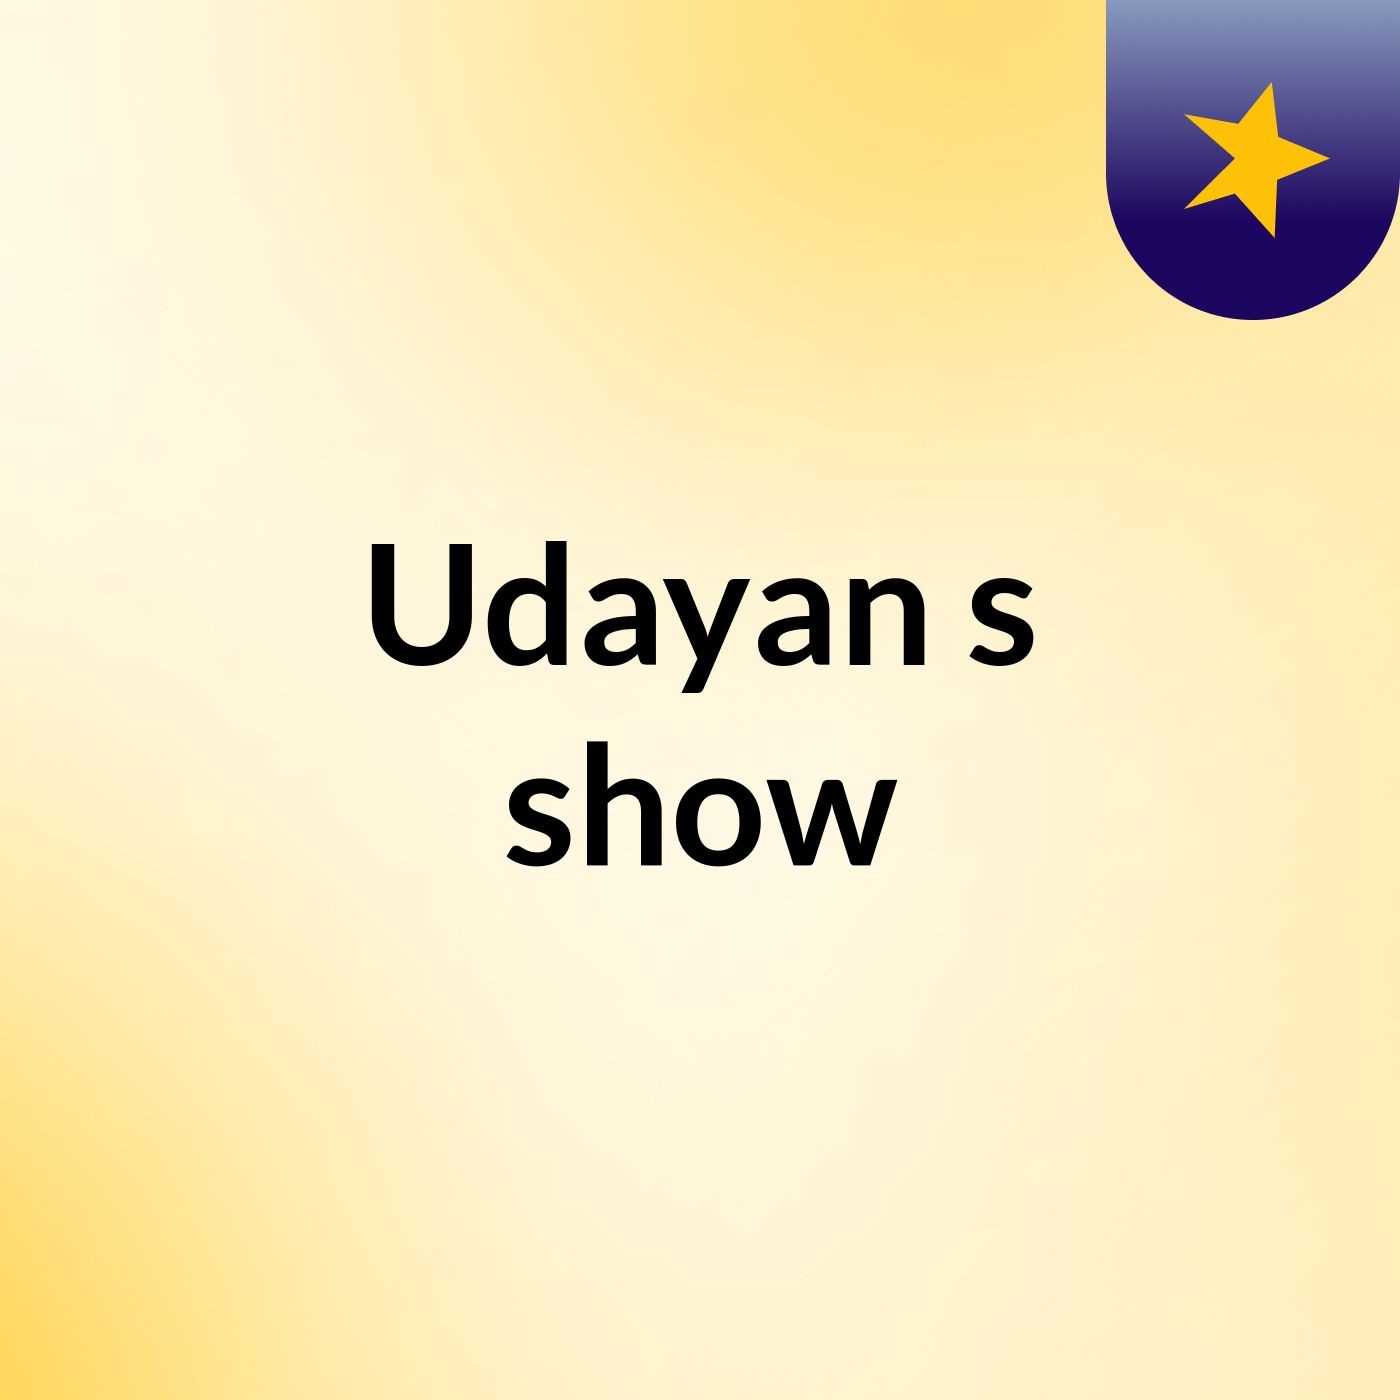 Udayan's show